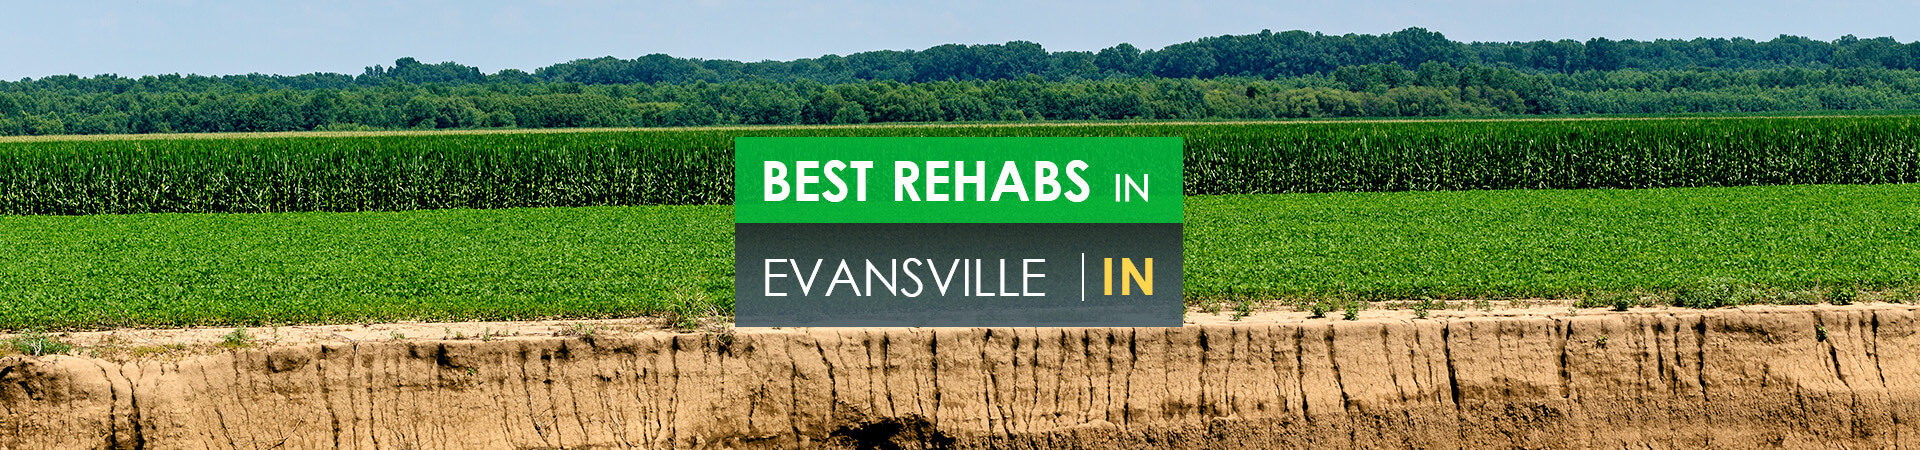 Best rehabs in Evansville, IN